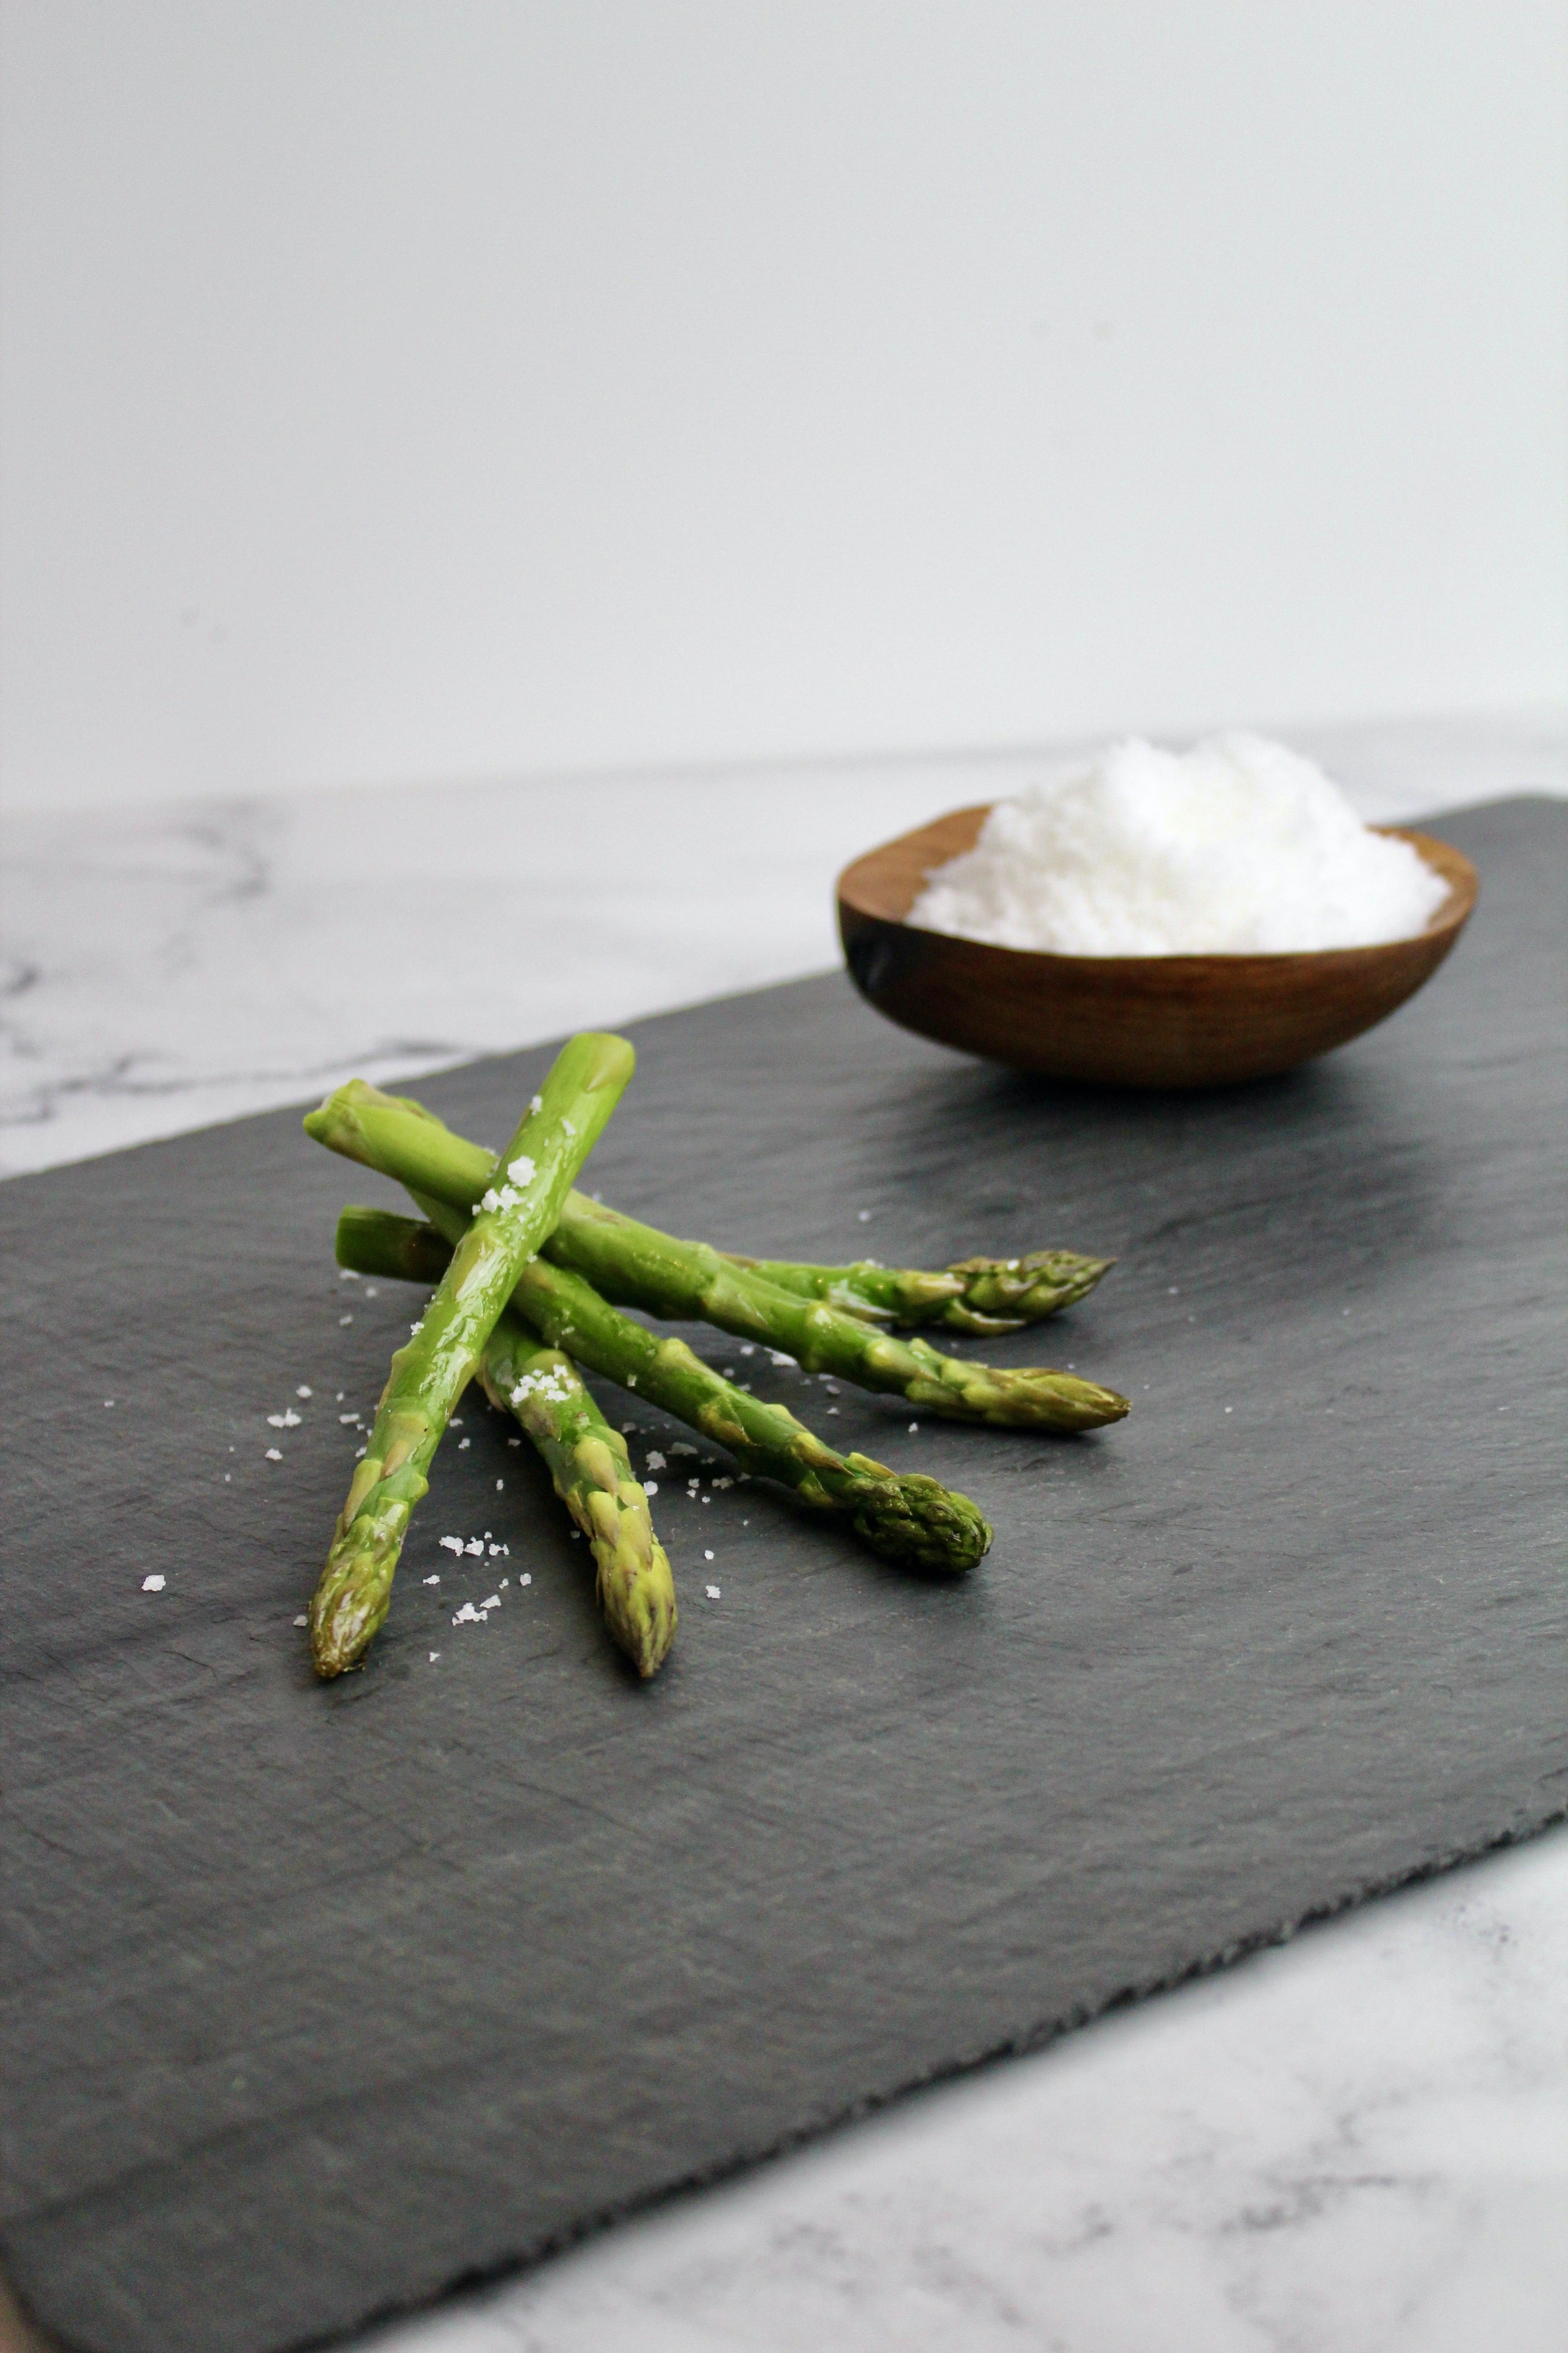 Sea Asparagus (Salt Substitute) – Texas Salt Co